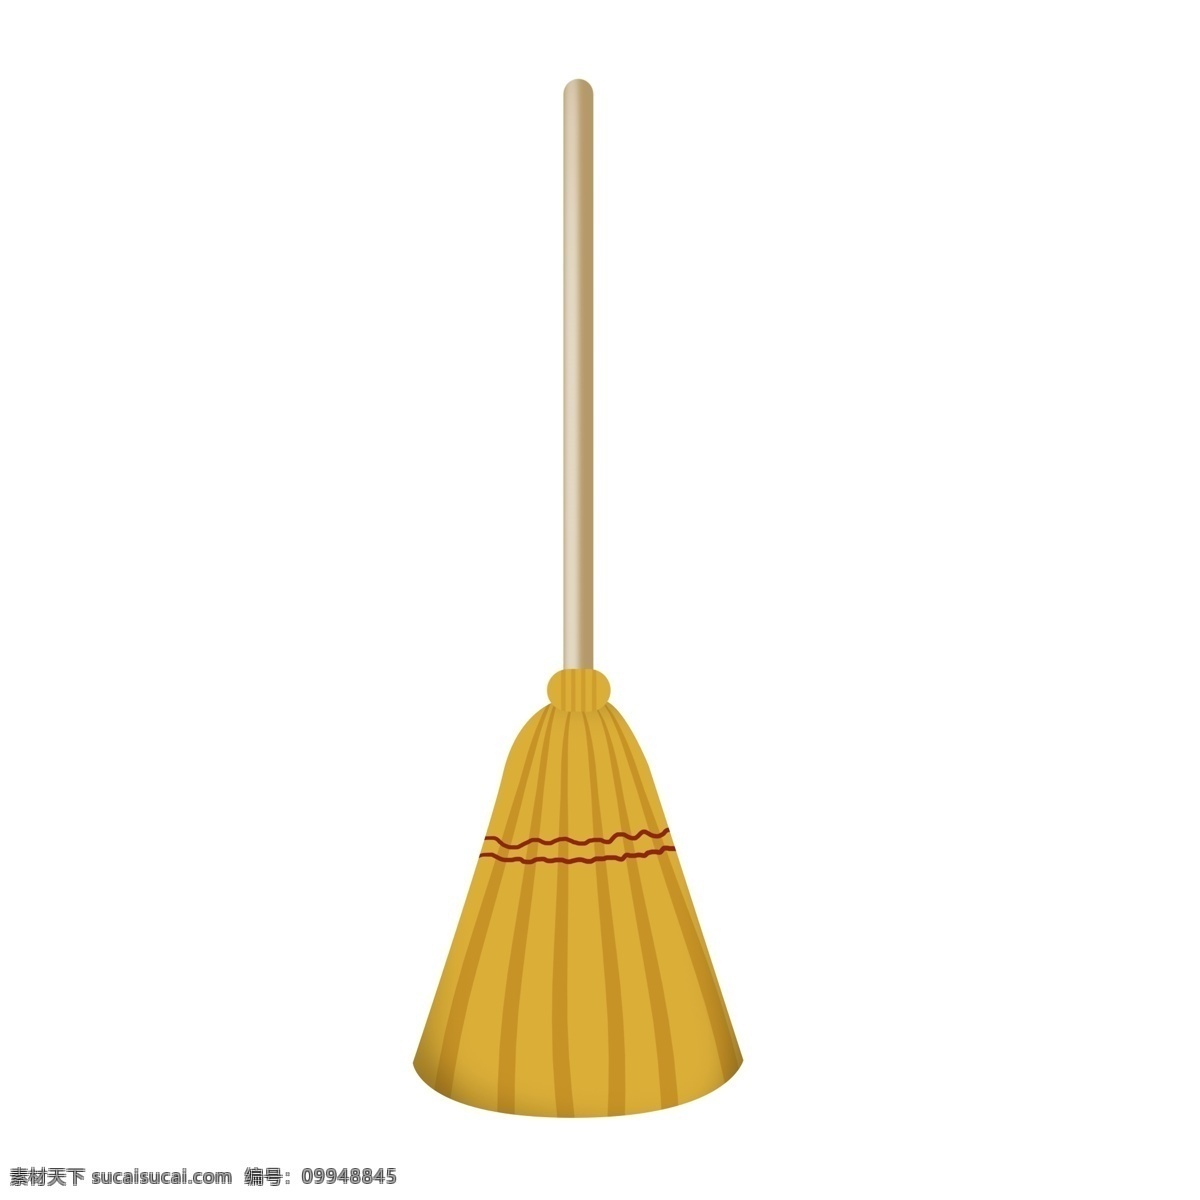 木质 黄色 扫把 插画 黄色的扫把 扫地的扫把 拖地的拖布 打扫的扫把 木制的扫把 扫地的工具